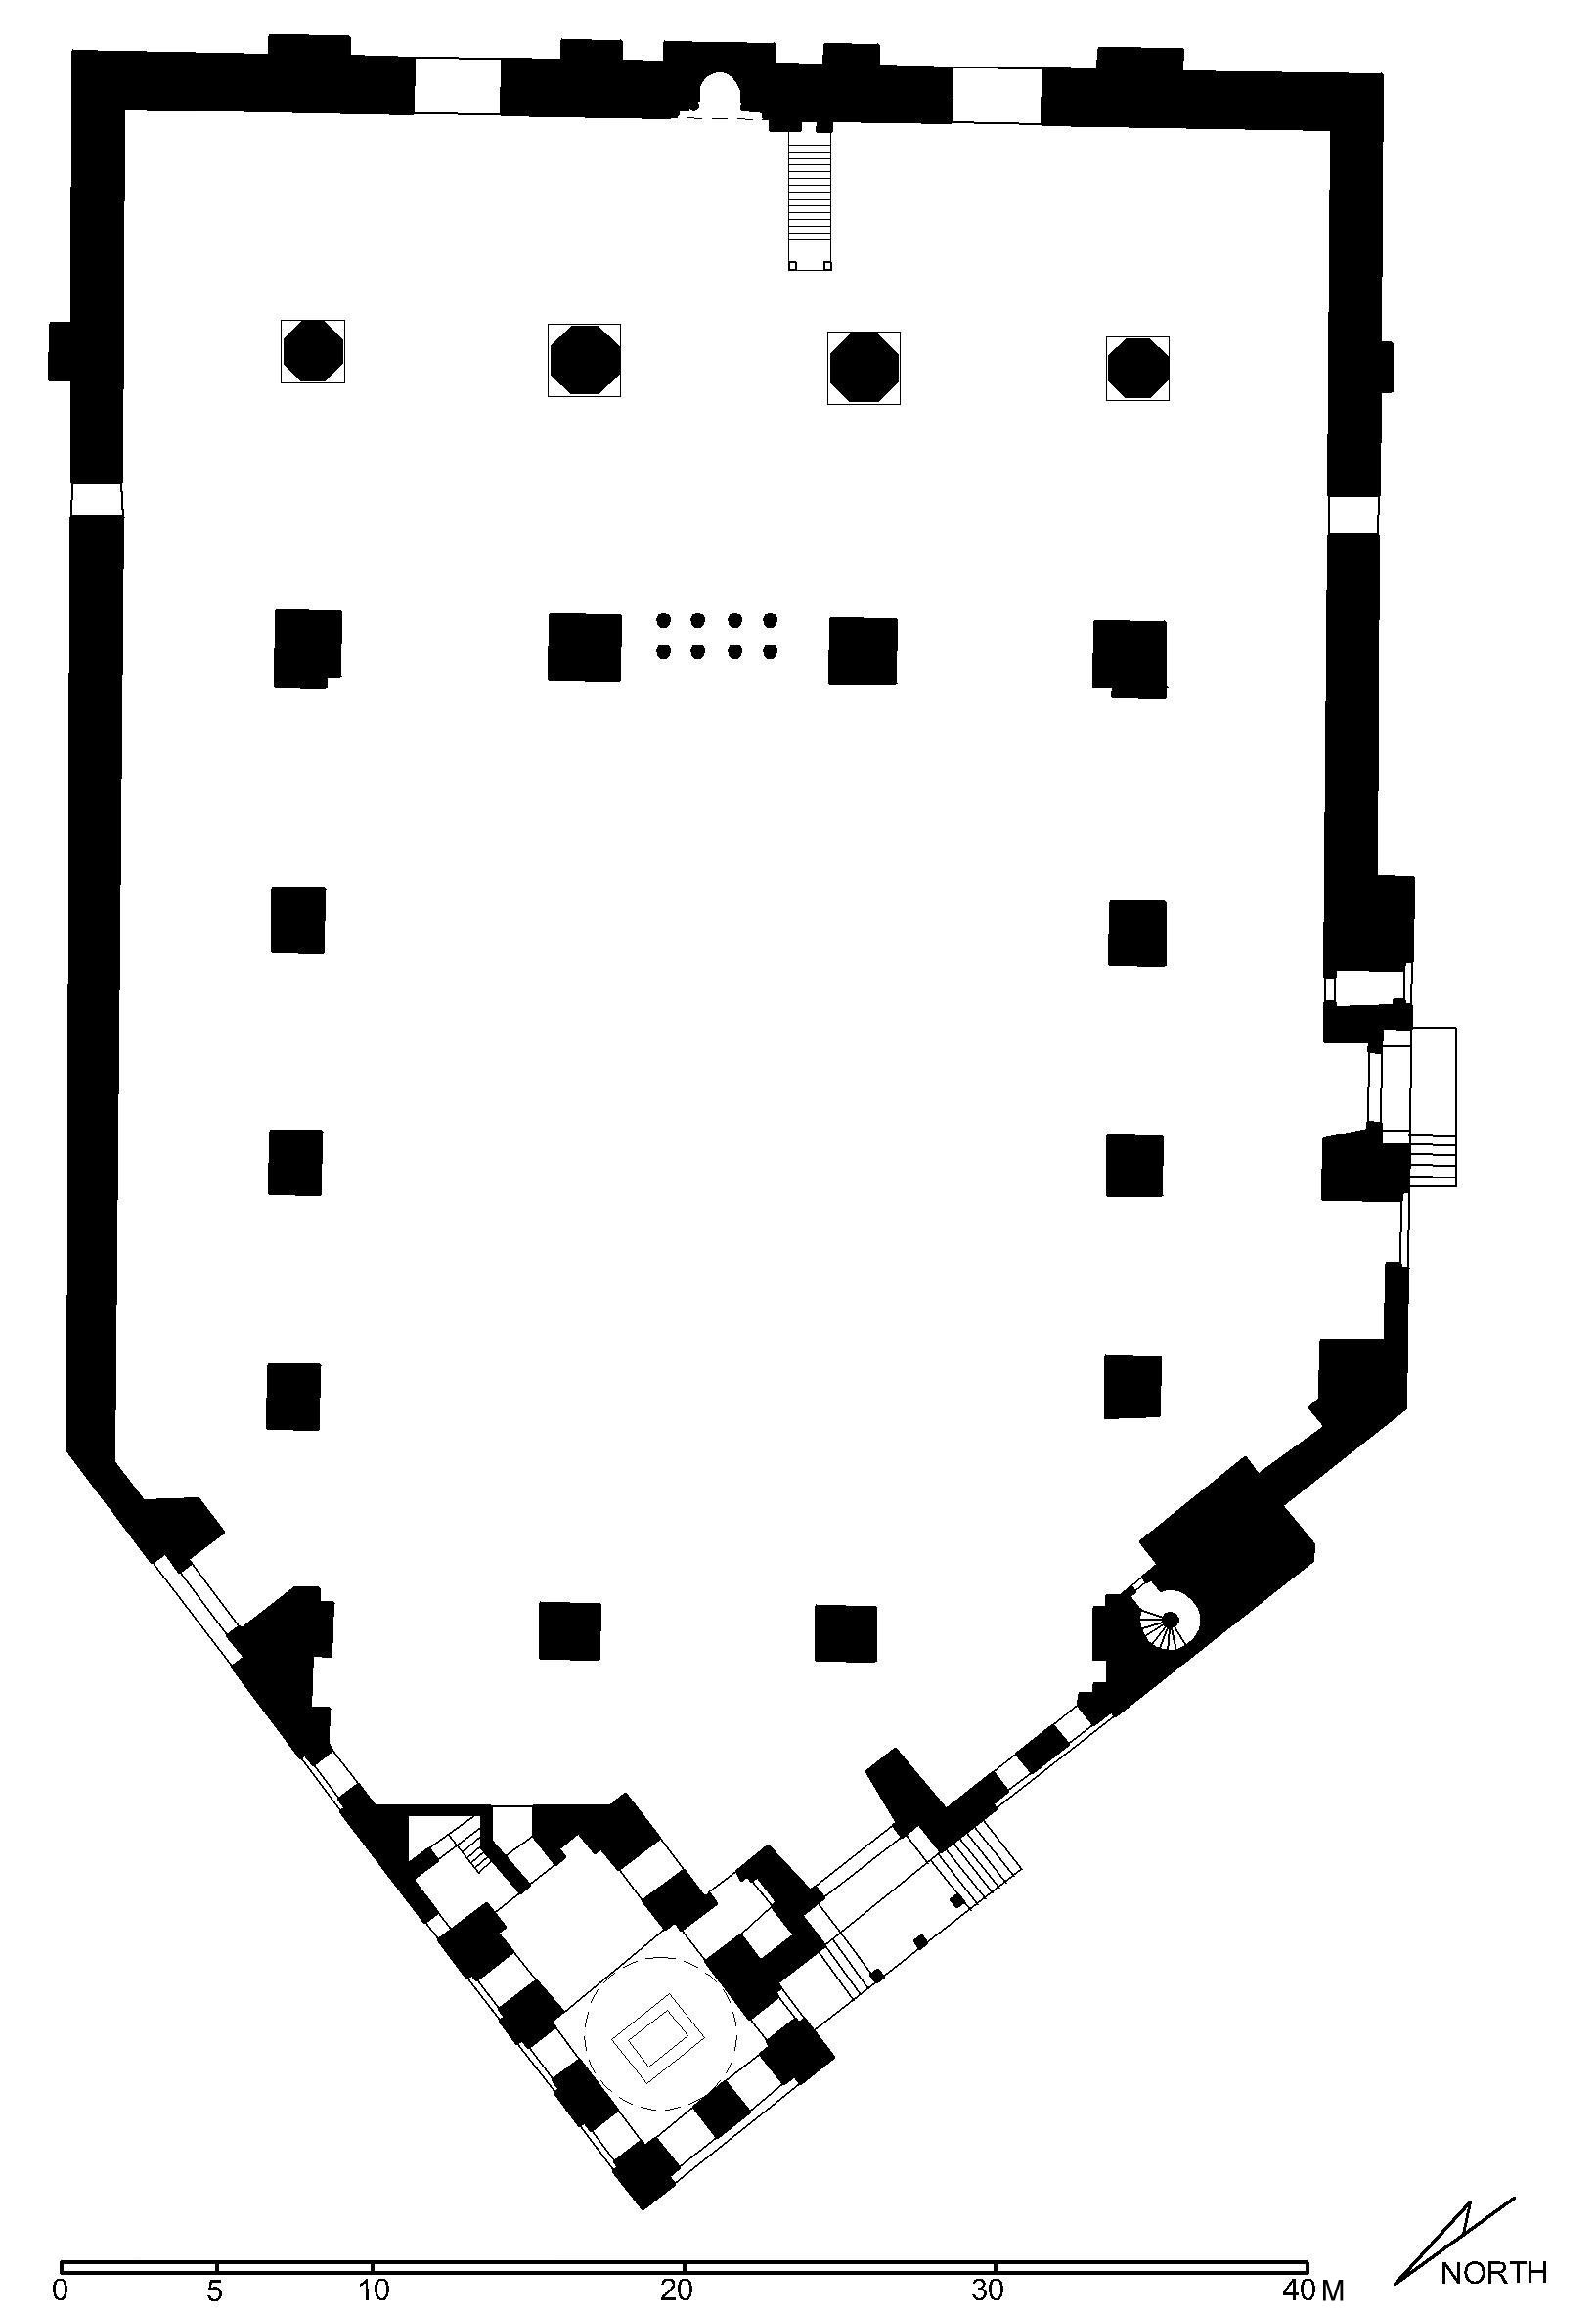 Reconstructed floor plan of complex (after Meinecke)